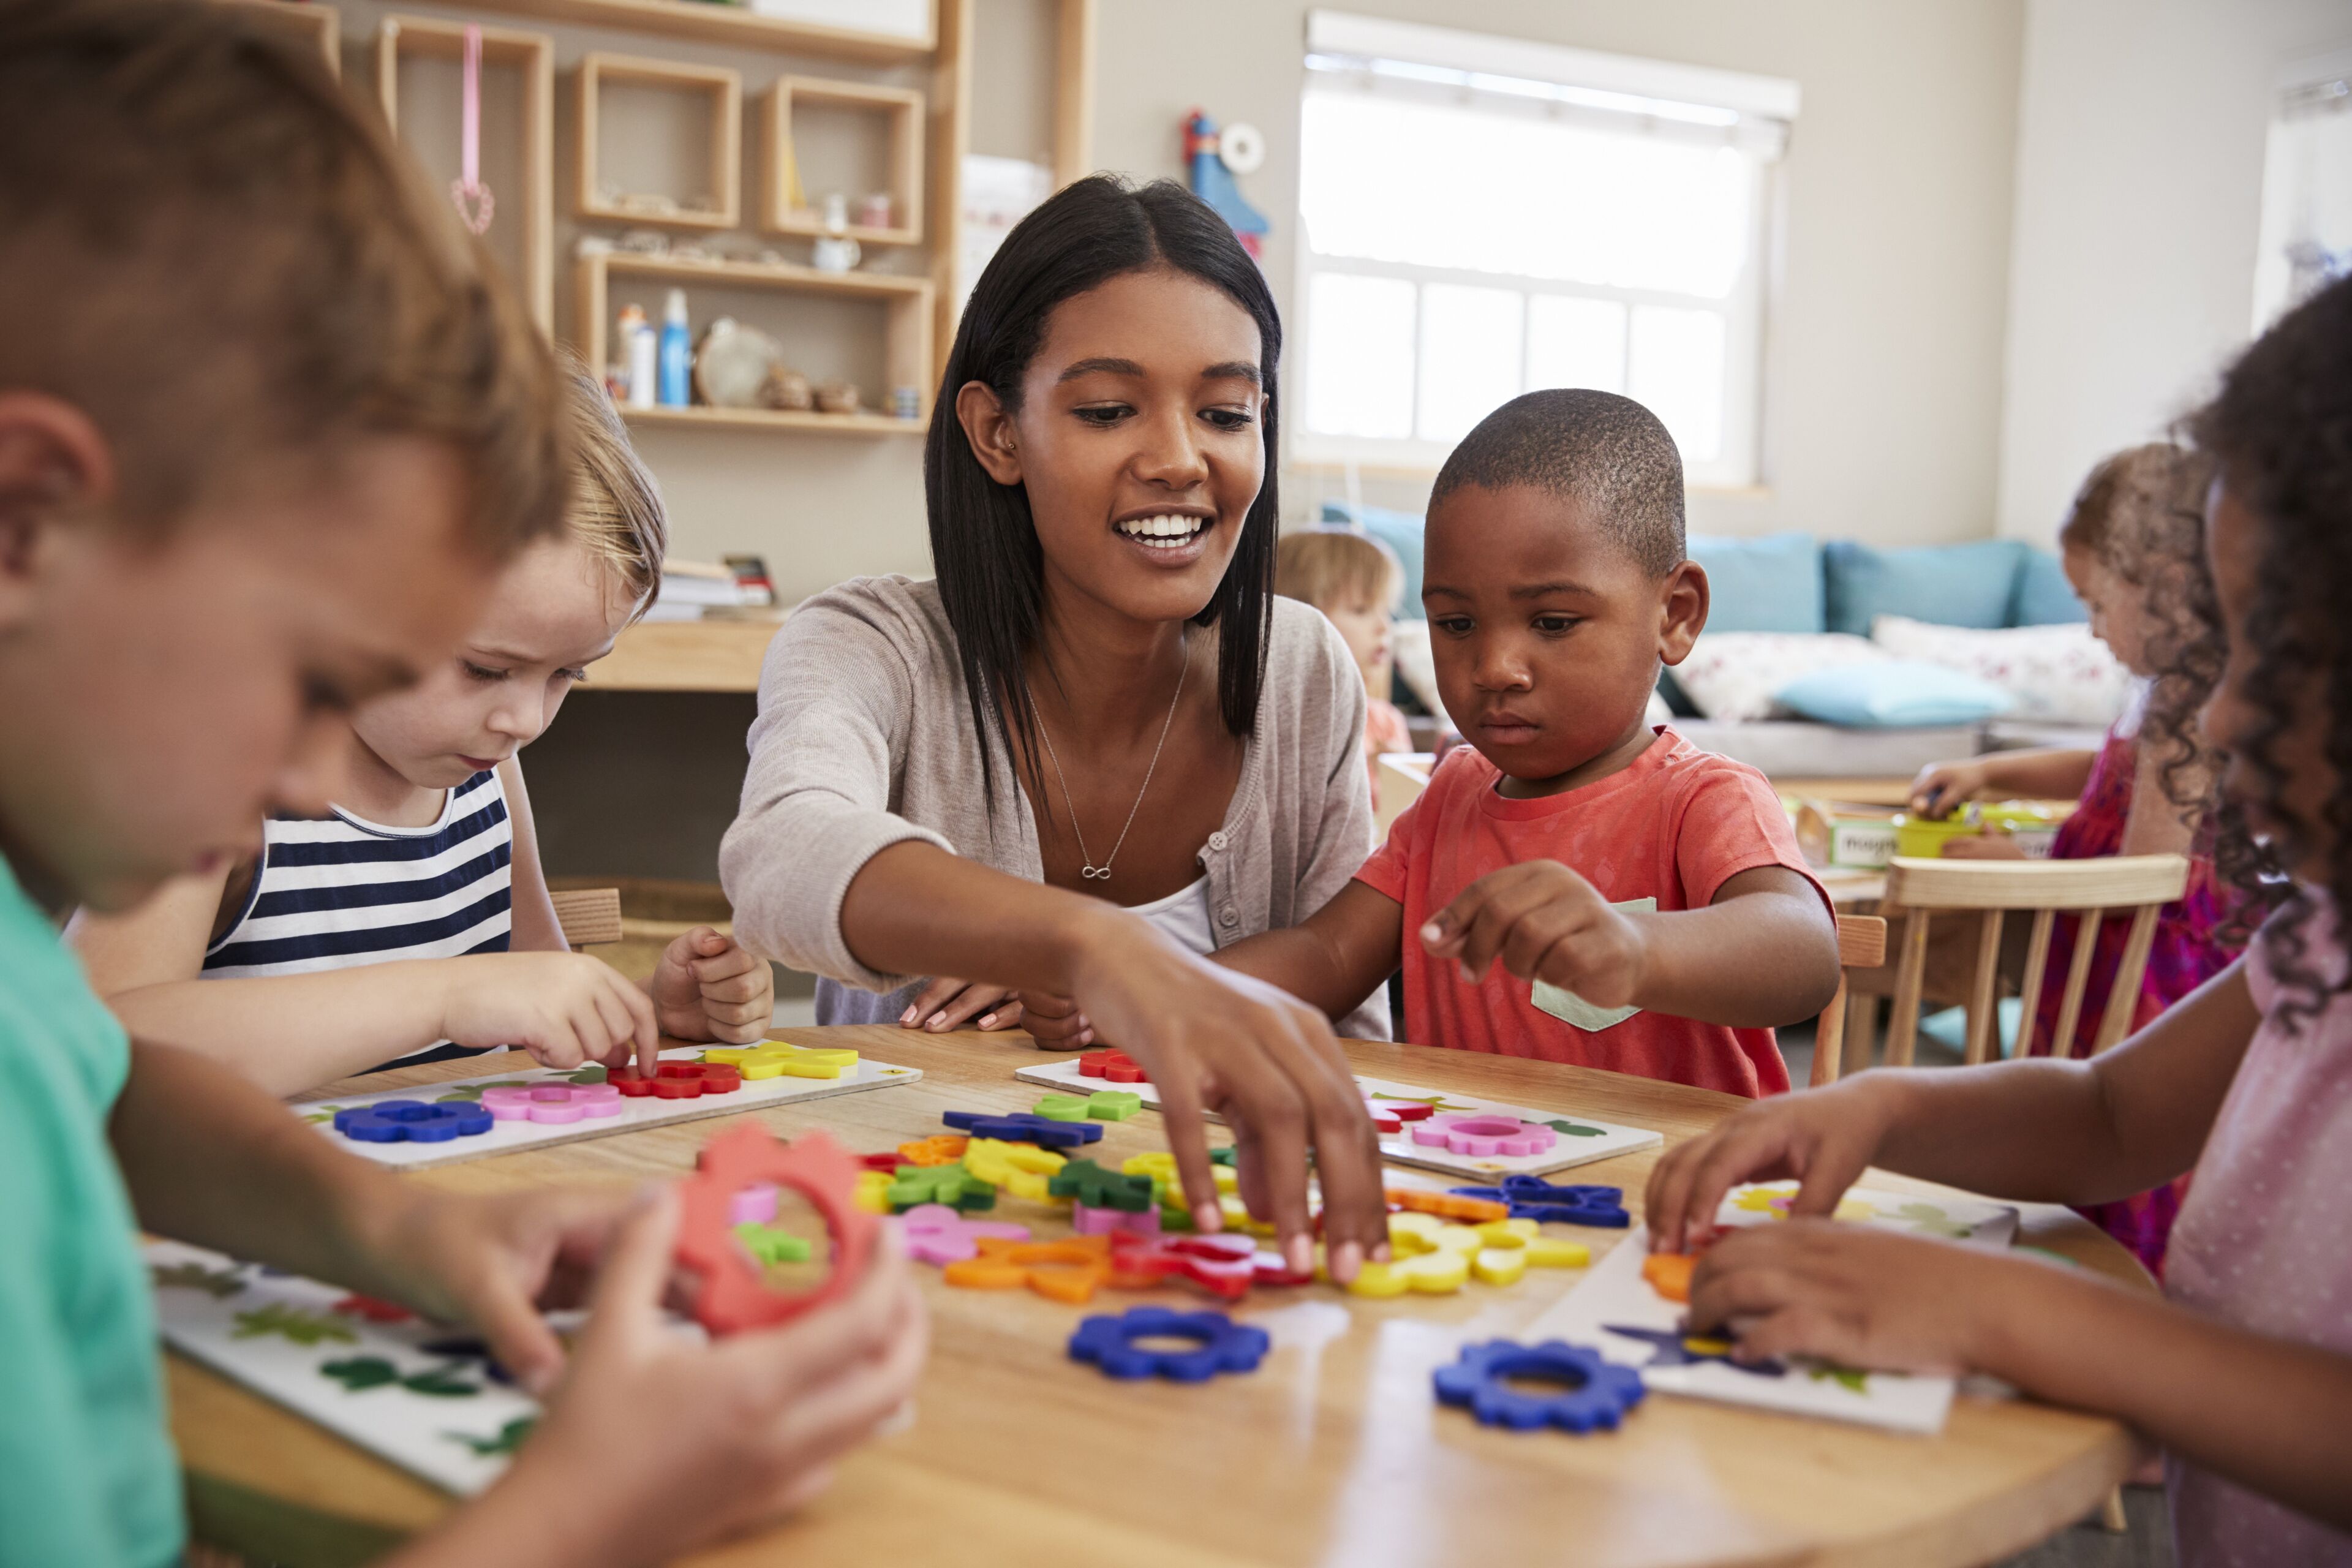 ImageUne enseignante interagit avec de jeunes enfants autour d'une table, les guidant dans une leçon ludique sur les formes et les couleurs à l'aide de jouets éducatifs.